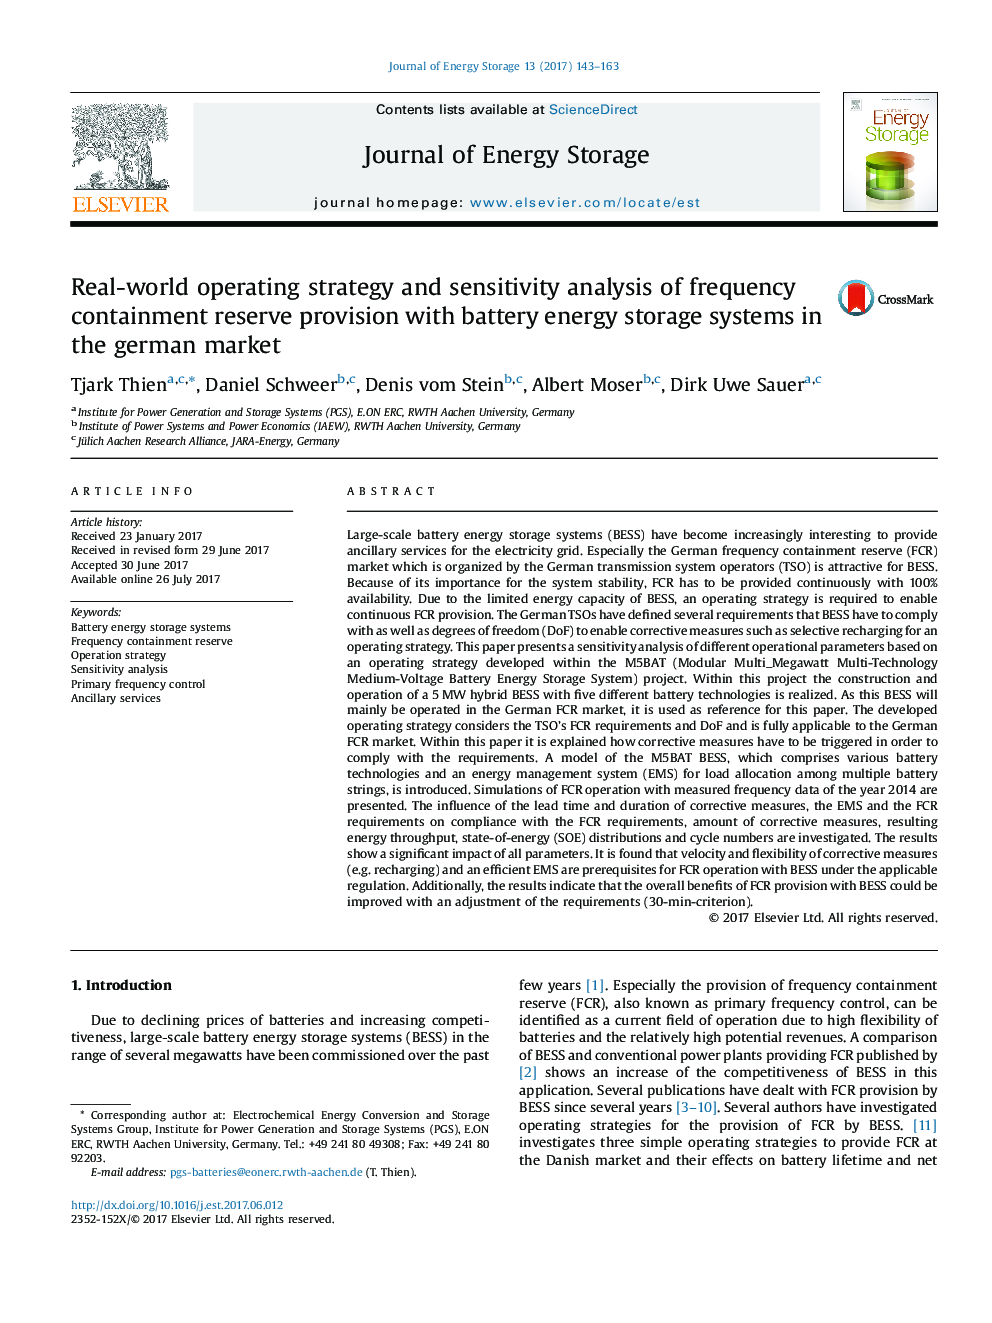 استراتژی عملیات واقعی در جهان و تجزیه و تحلیل حساسیت ذخیره ذخائر فرکانس با سیستم های ذخیره انرژی باتری در بازار آلمان 